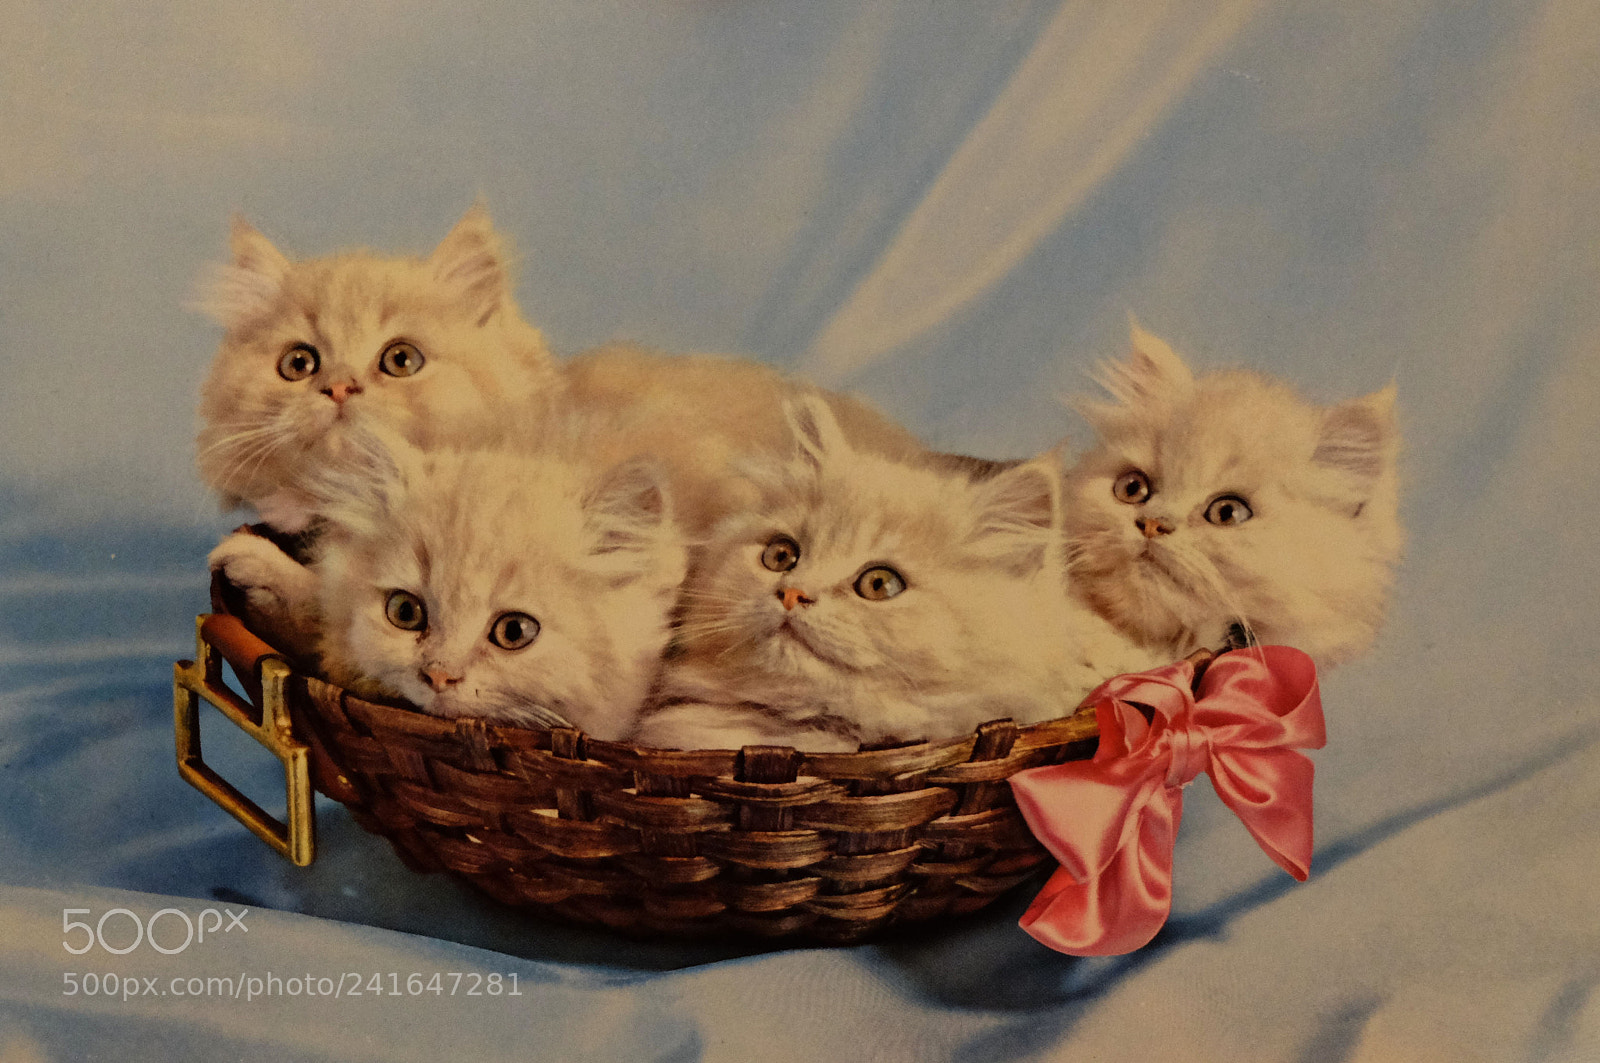 Fujifilm X-M1 sample photo. Four white kittens photography